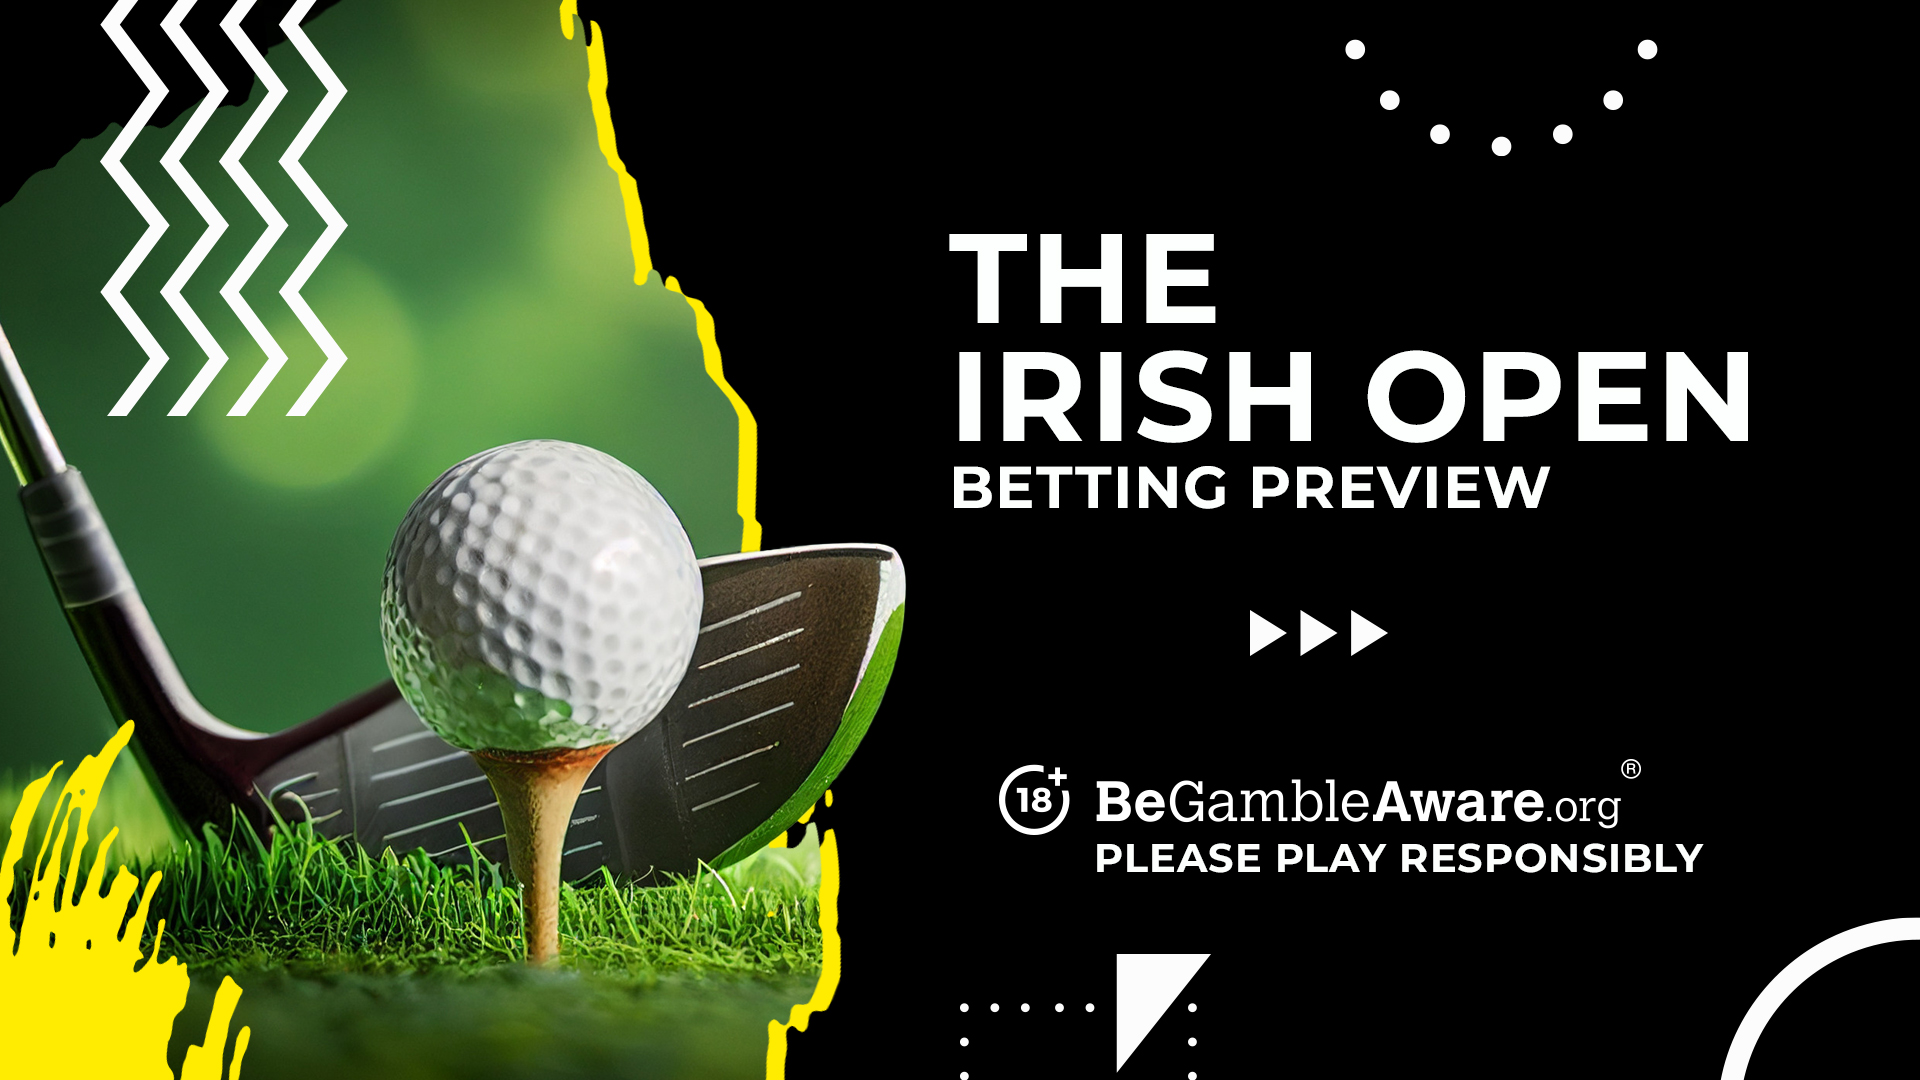 Photo: irish open golf betting 2015